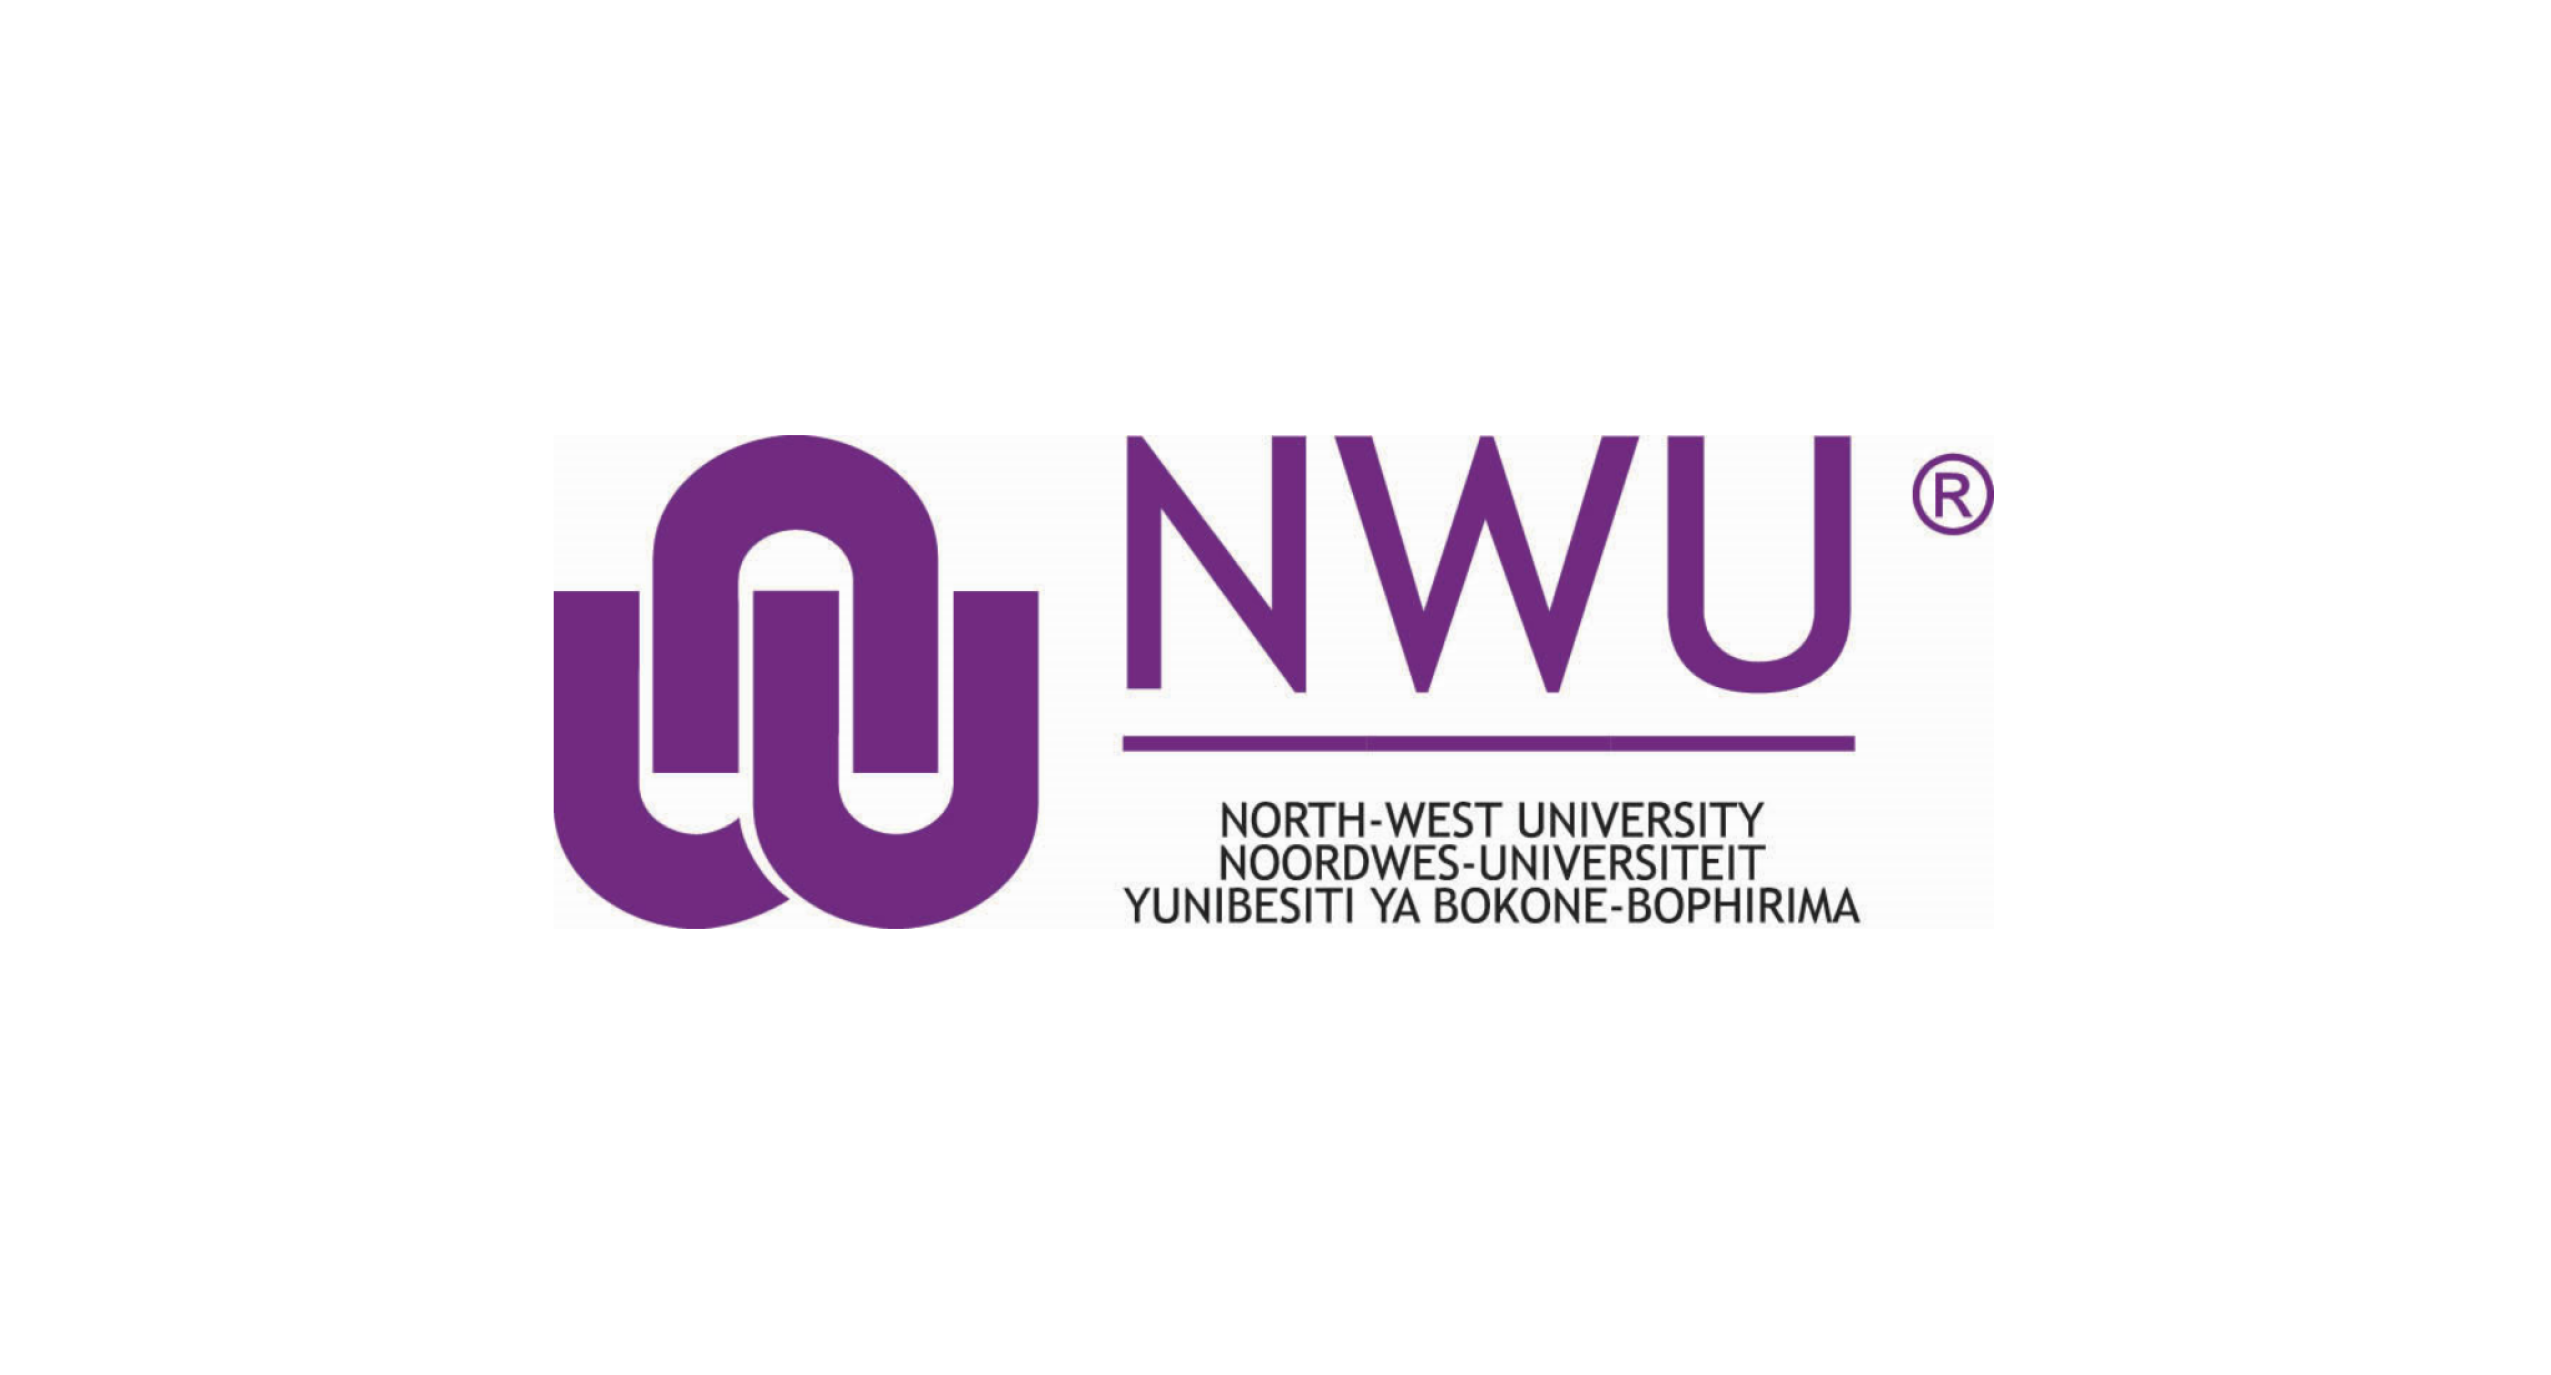 Image of North-West University logo